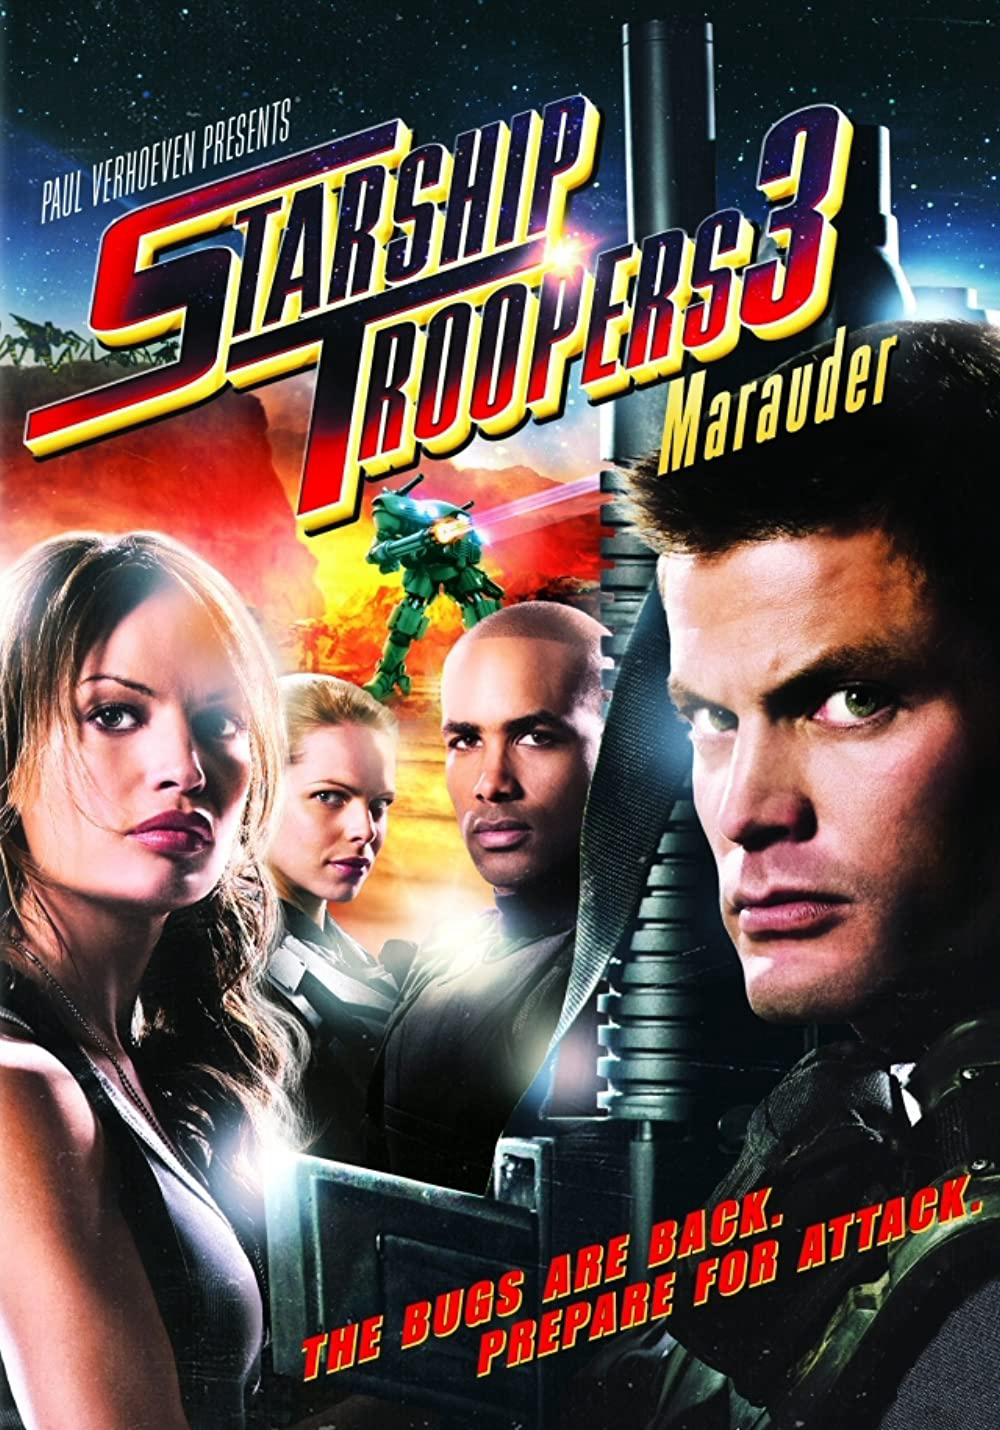 Chiến Binh Tàu Không Gian 3: Hành Tinh Marauder (Starship Troopers 3: Marauder) [2008]